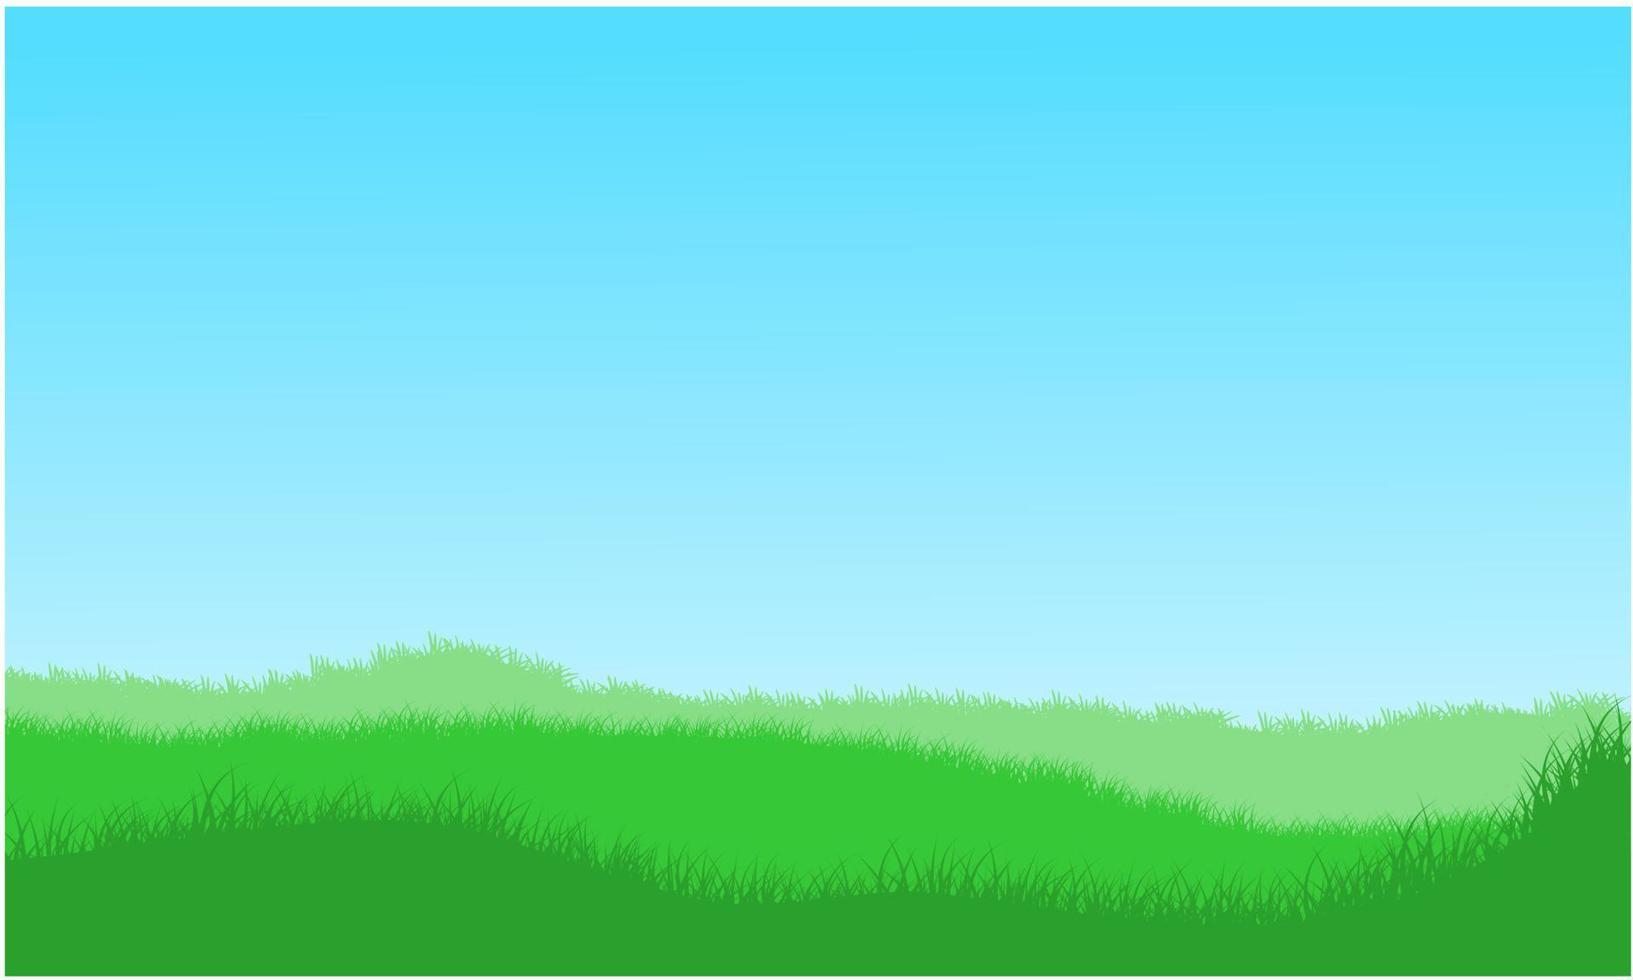 gräsbacke, gräsmark, gräsfält och himmel vektor